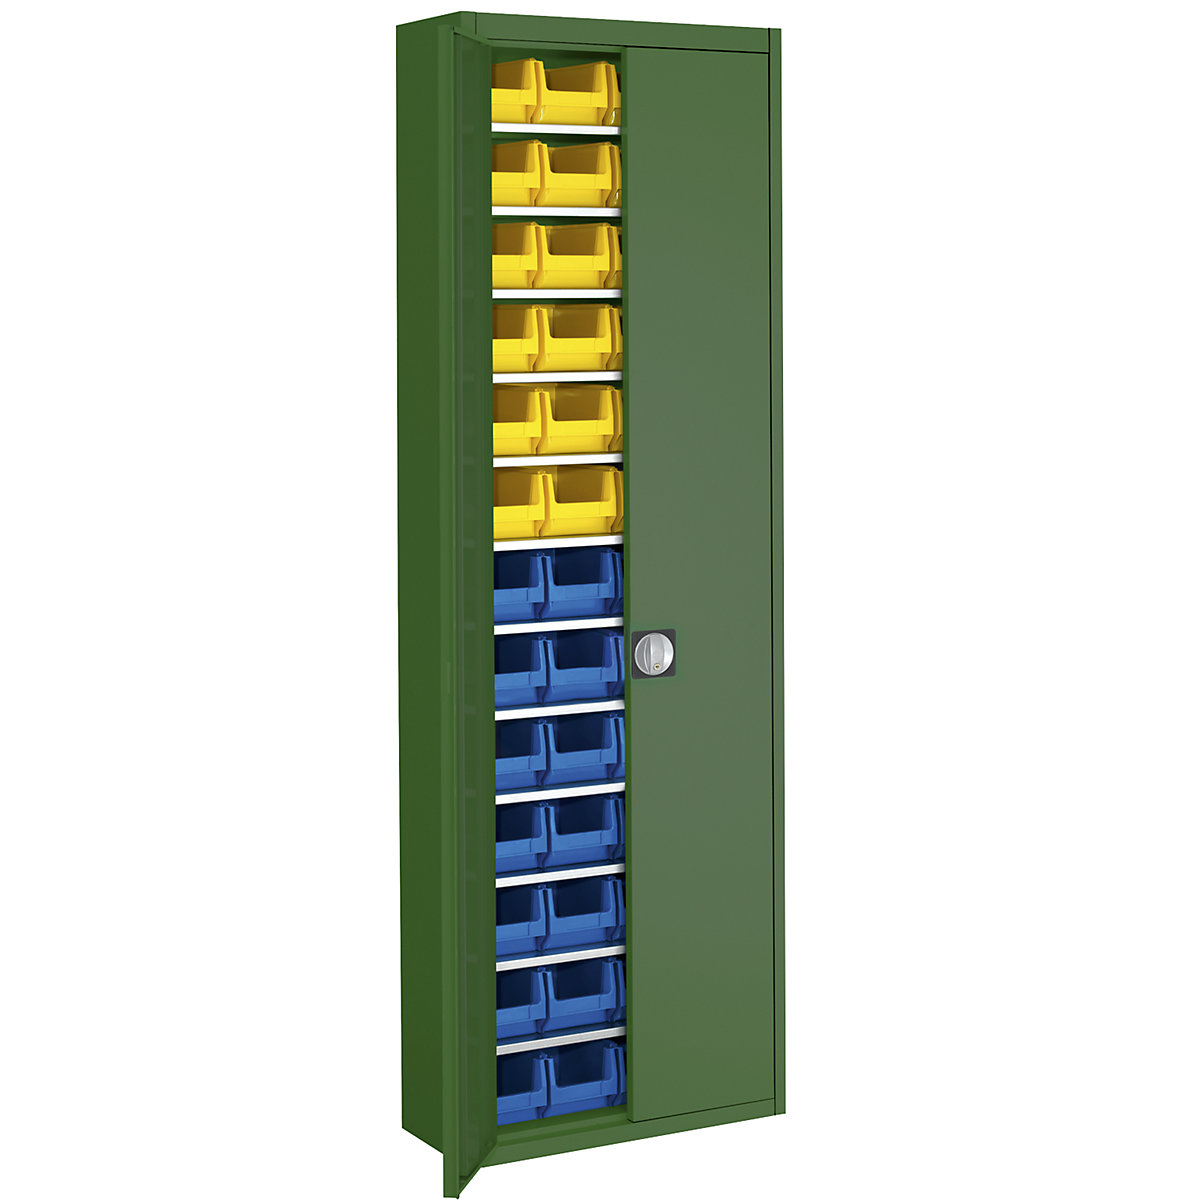 Raktári szekrény nyitott tárolódobozokkal – mauser, ma x szé x mé 2150 x 680 x 280 mm, egyszínű, zöld, 52 doboz-3